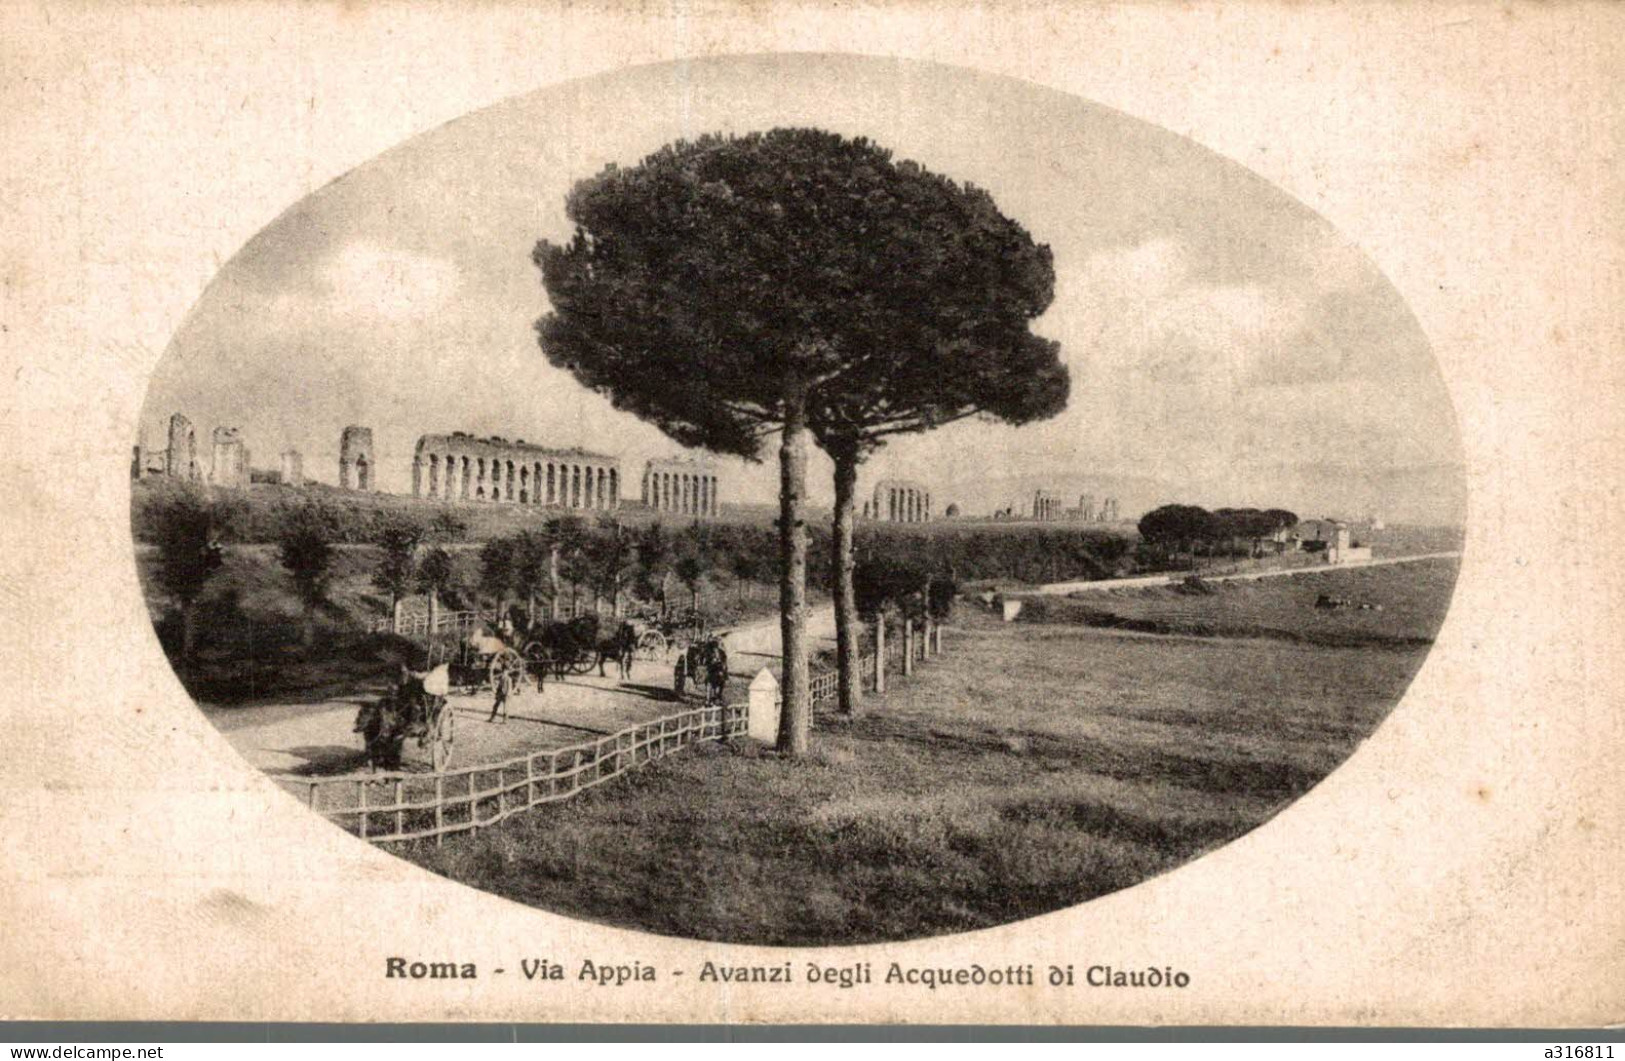 Roma Via Appia - Andere Monumente & Gebäude